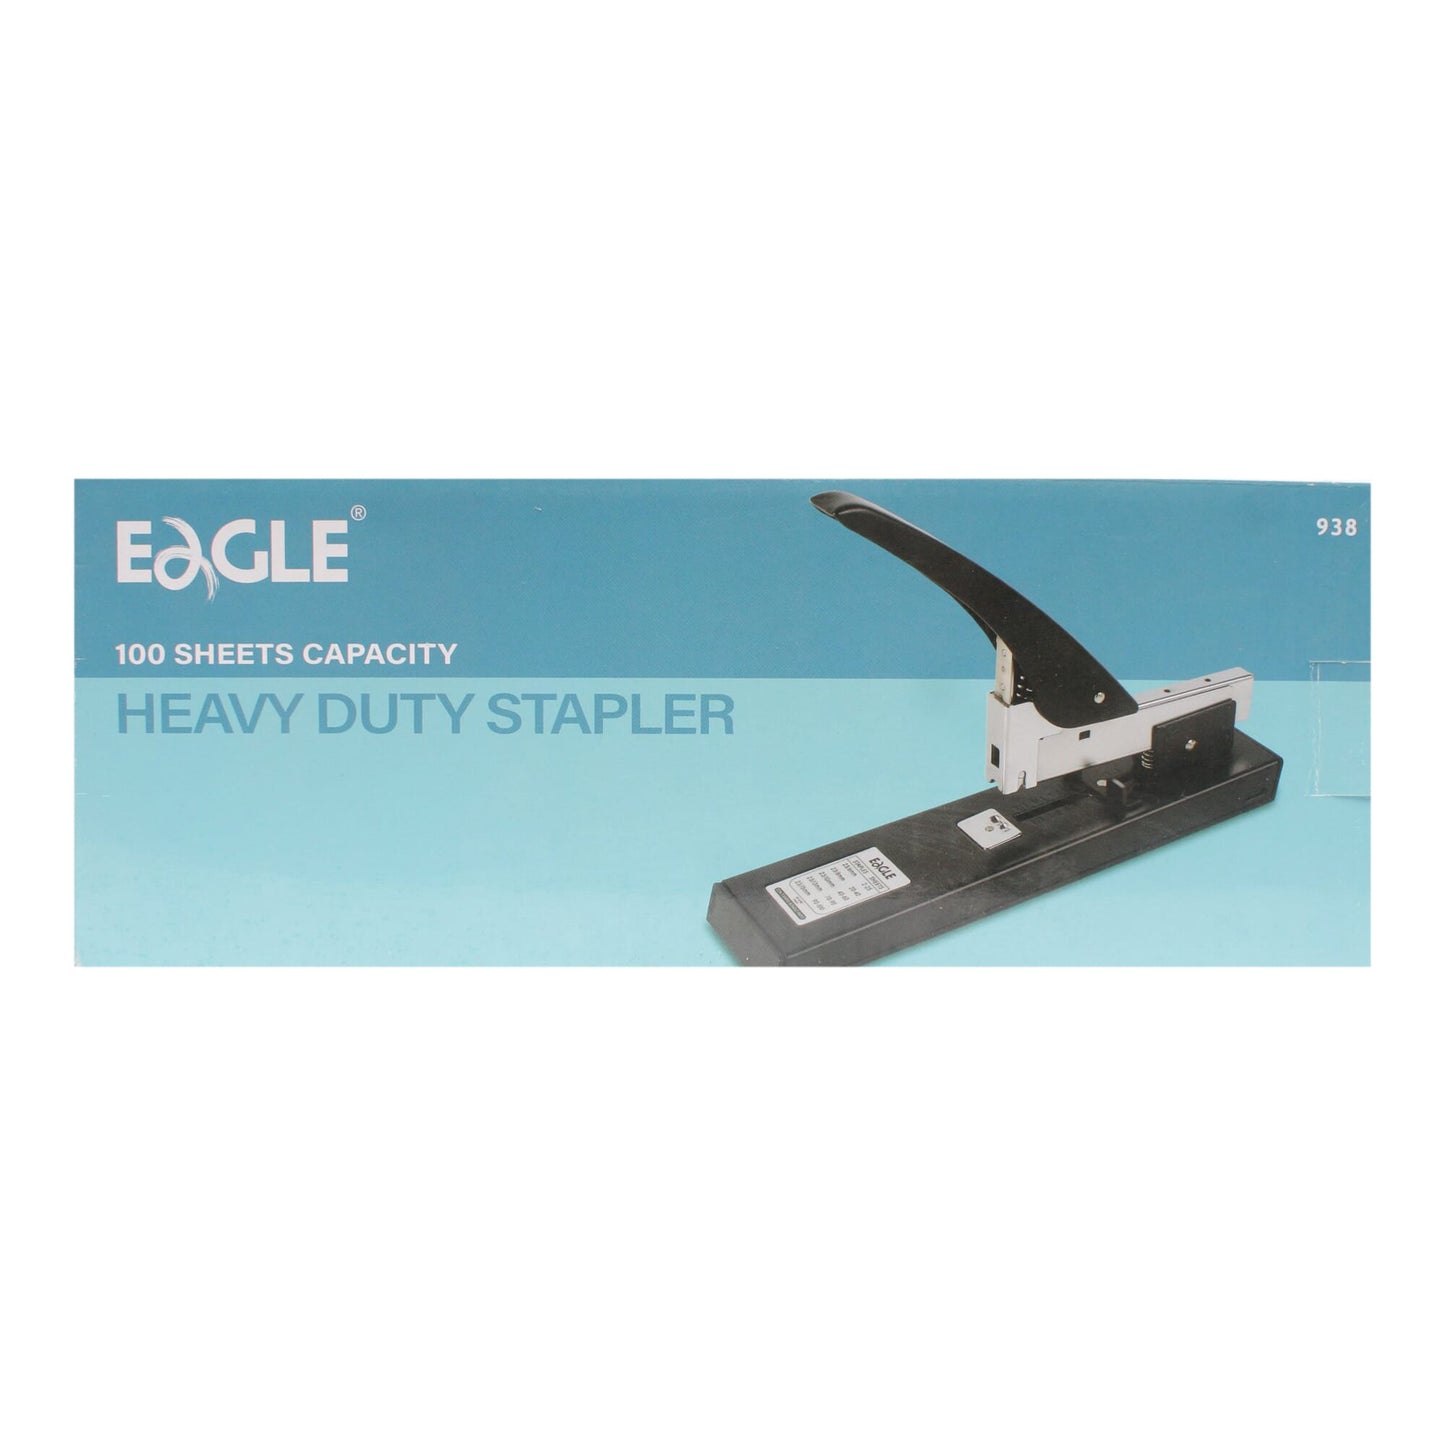 Eagle Heavy Duty Stapler